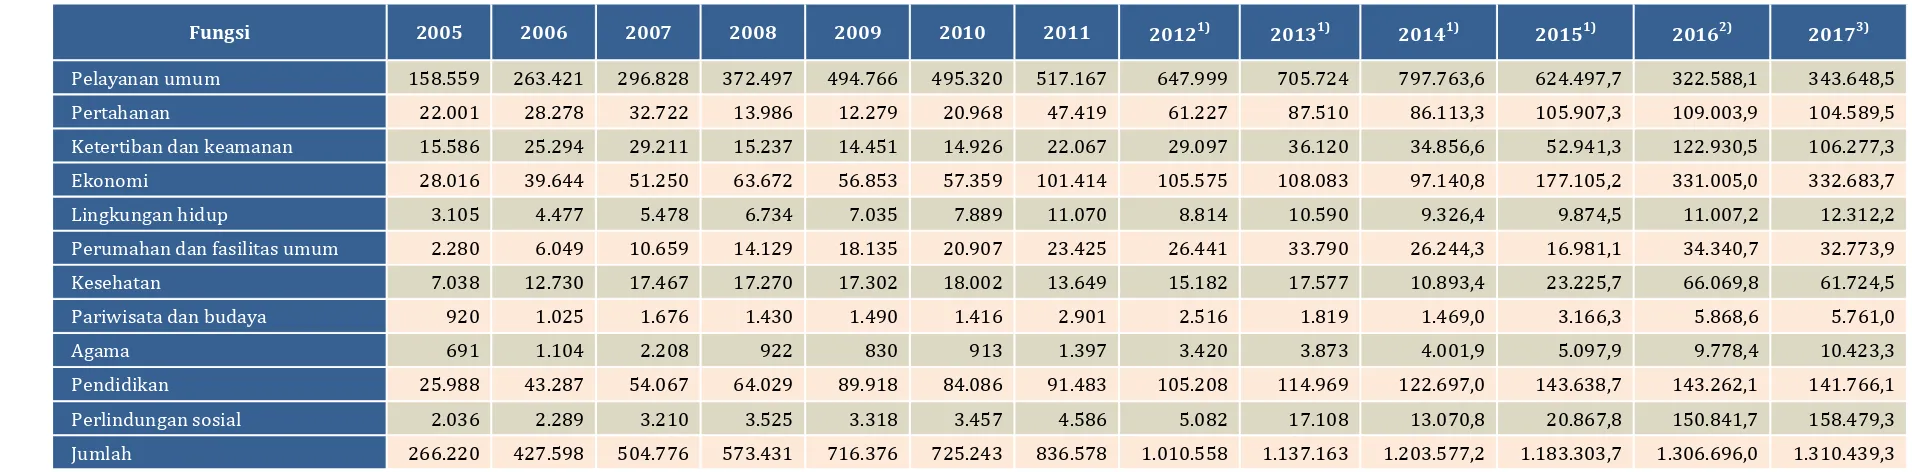 Tabel Anggaran Belanja Pemerintah Pusat Berdasarkan Fungsi (miliar rupiah), 2005-2017